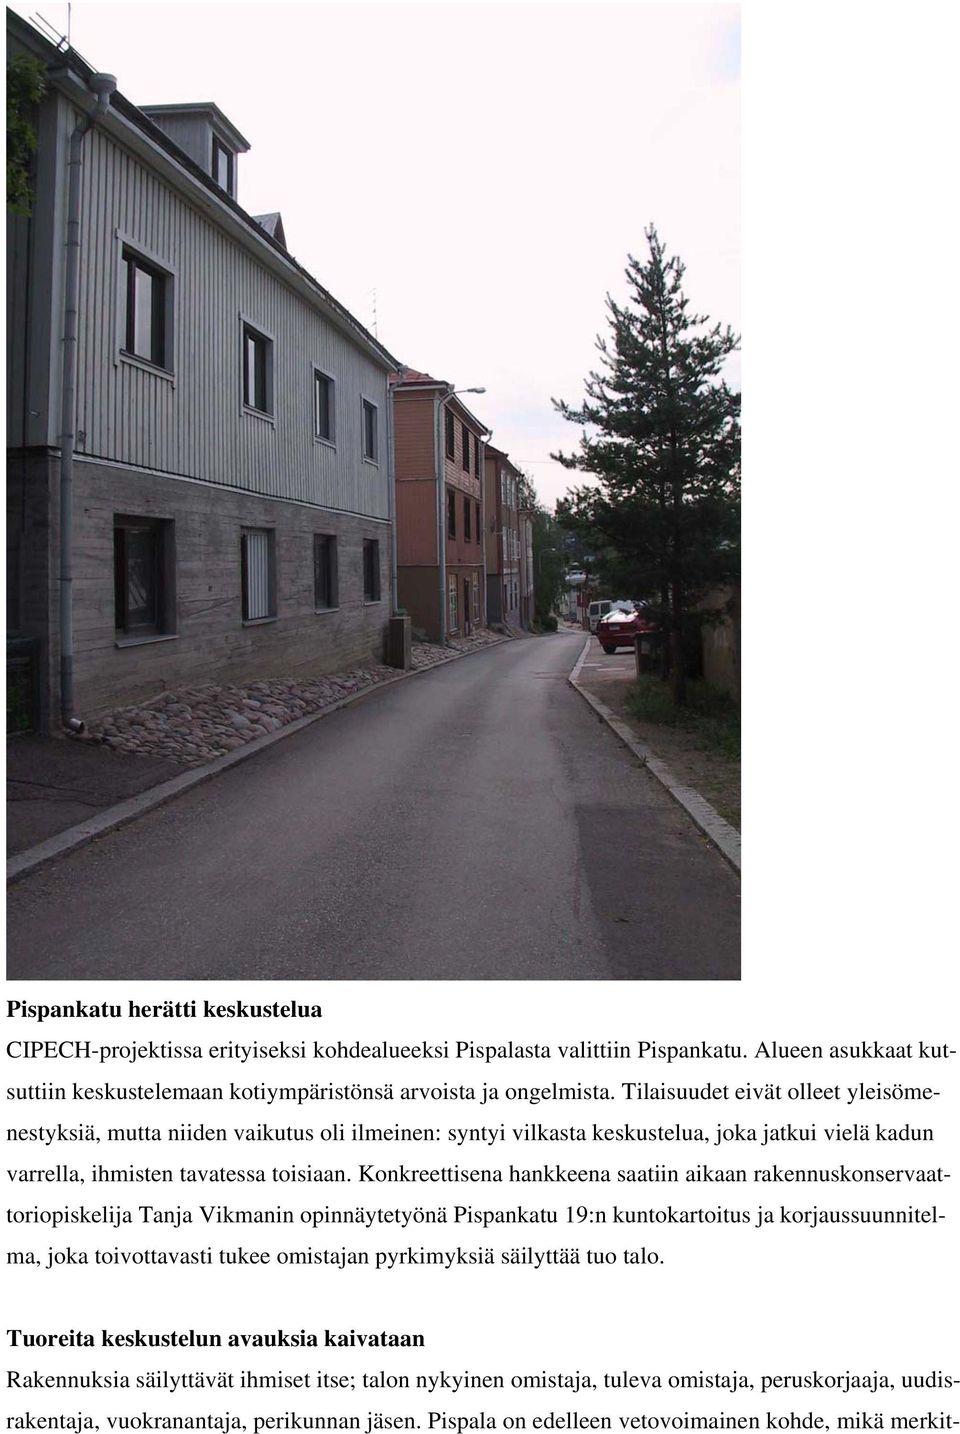 Konkreettisena hankkeena saatiin aikaan rakennuskonservaattoriopiskelija Tanja Vikmanin opinnäytetyönä Pispankatu 19:n kuntokartoitus ja korjaussuunnitelma, joka toivottavasti tukee omistajan